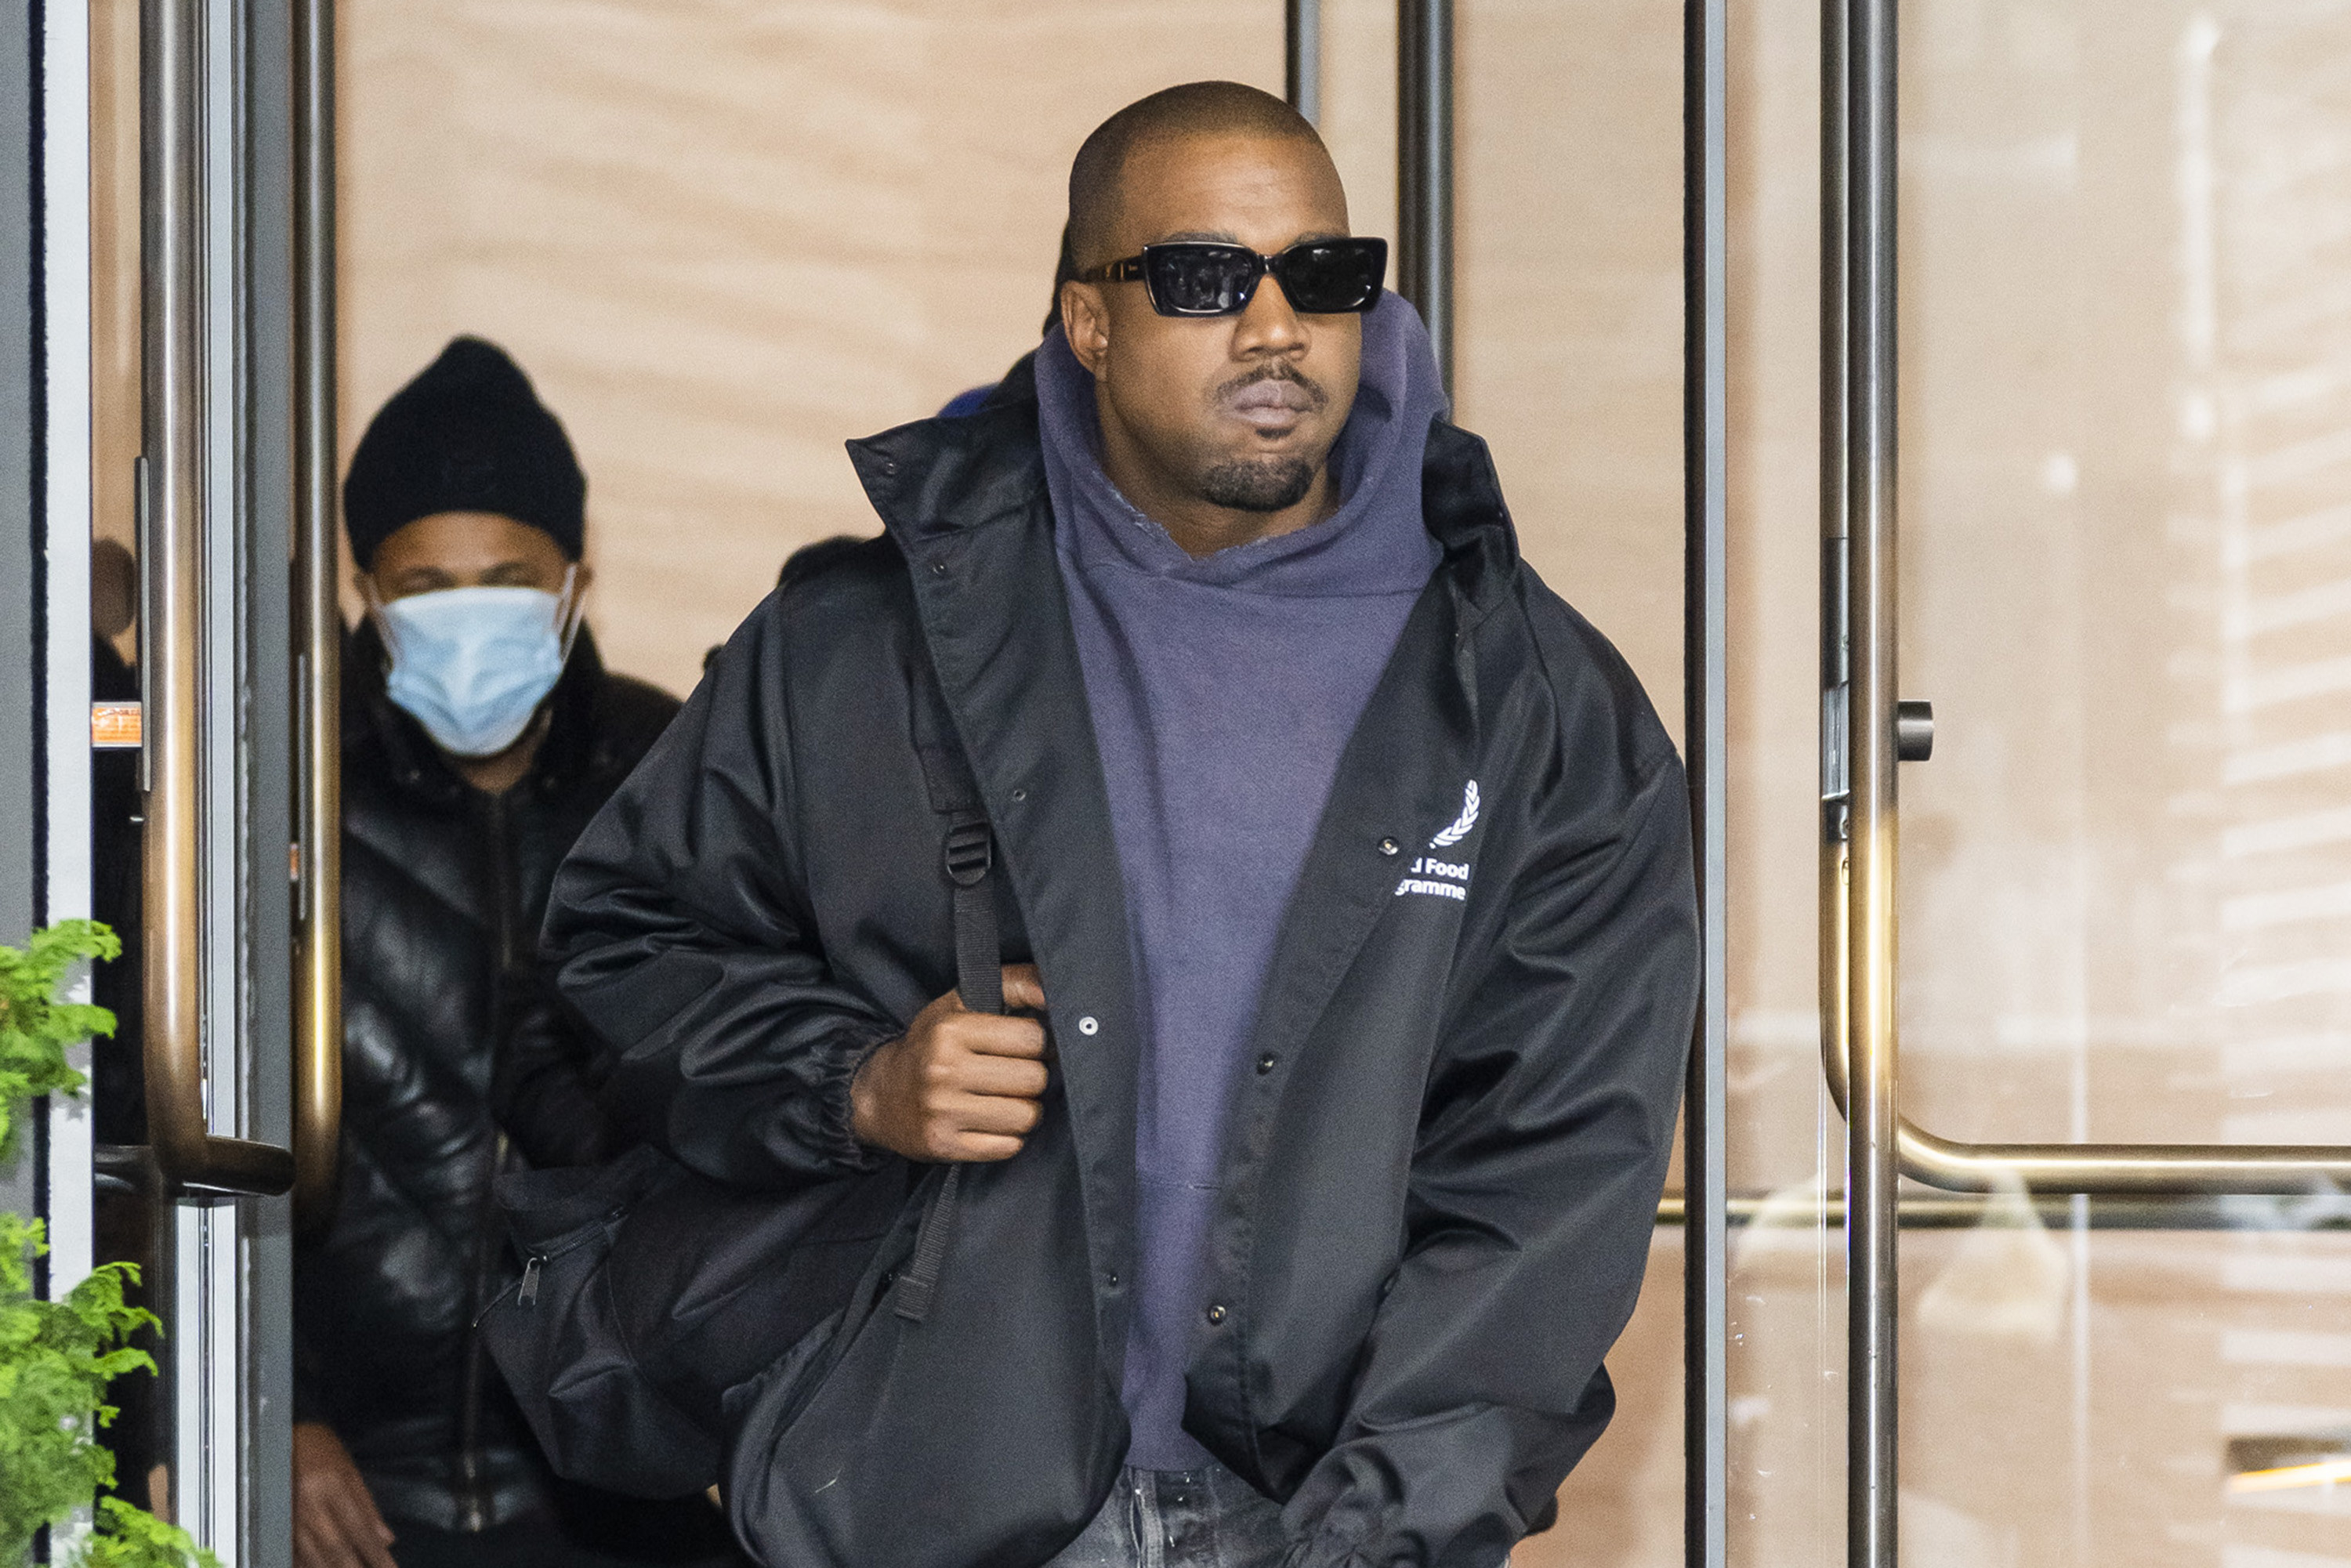 Kanye West leaving a building